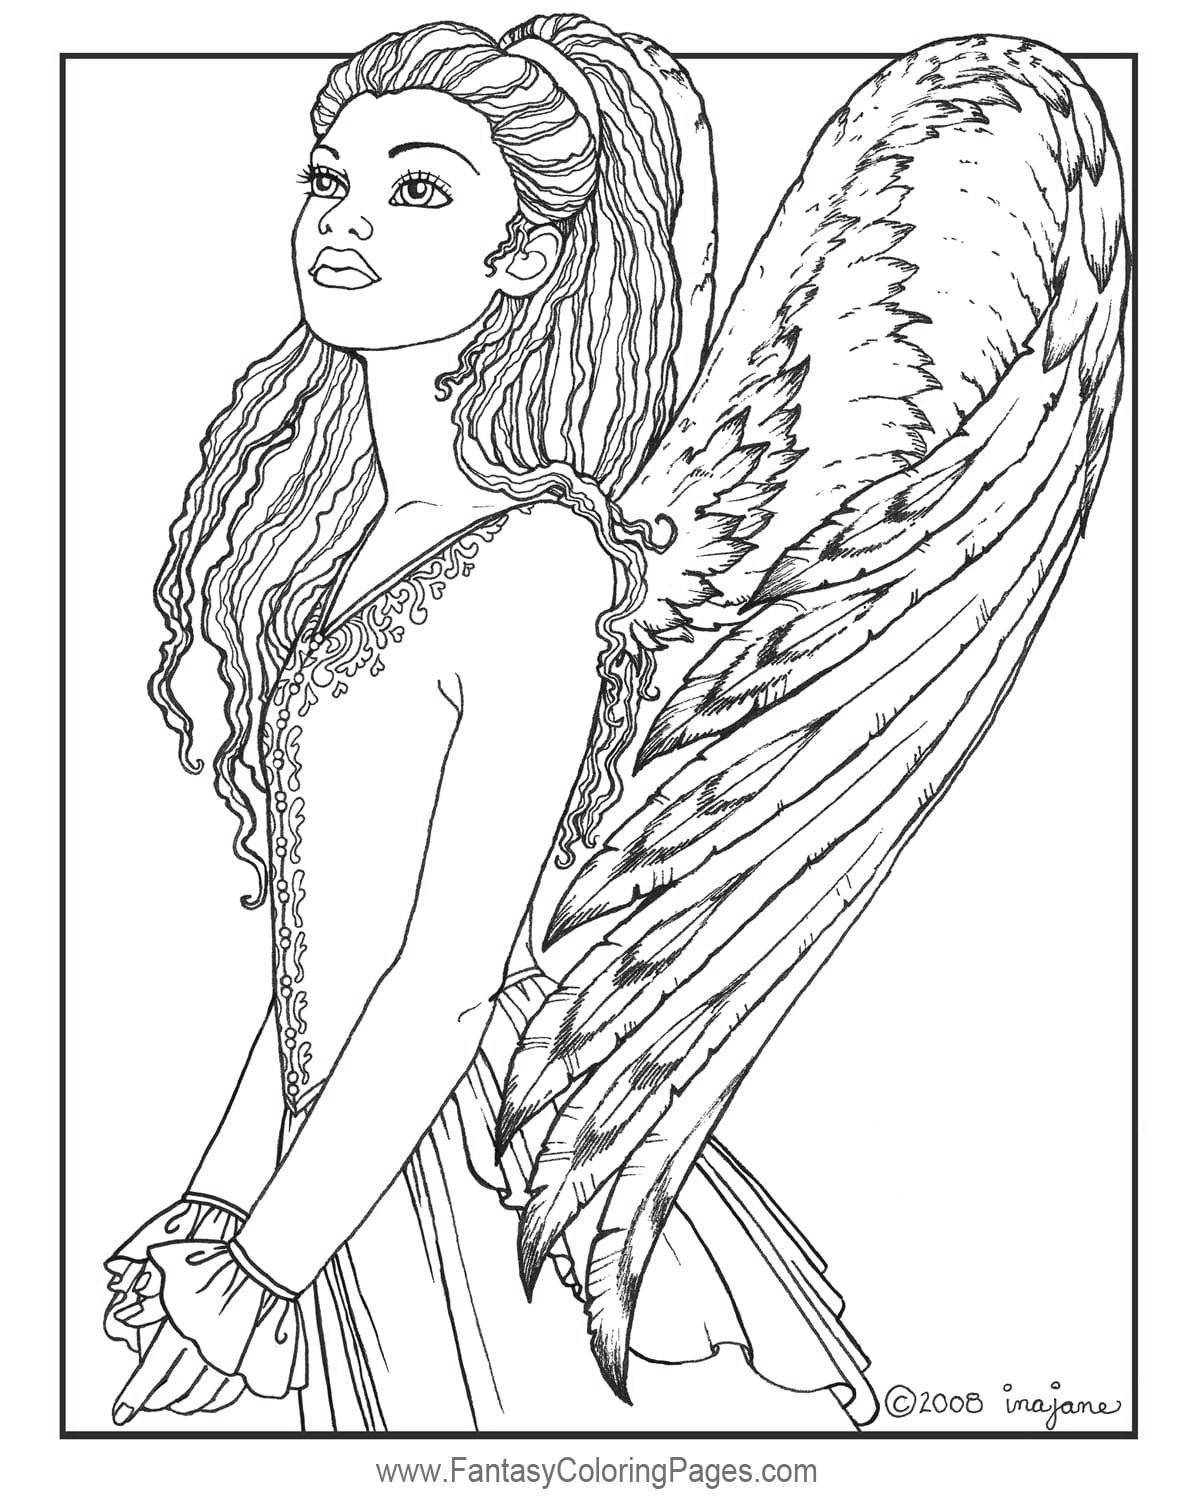 Божественная раскраска ангелы с красивыми крыльями